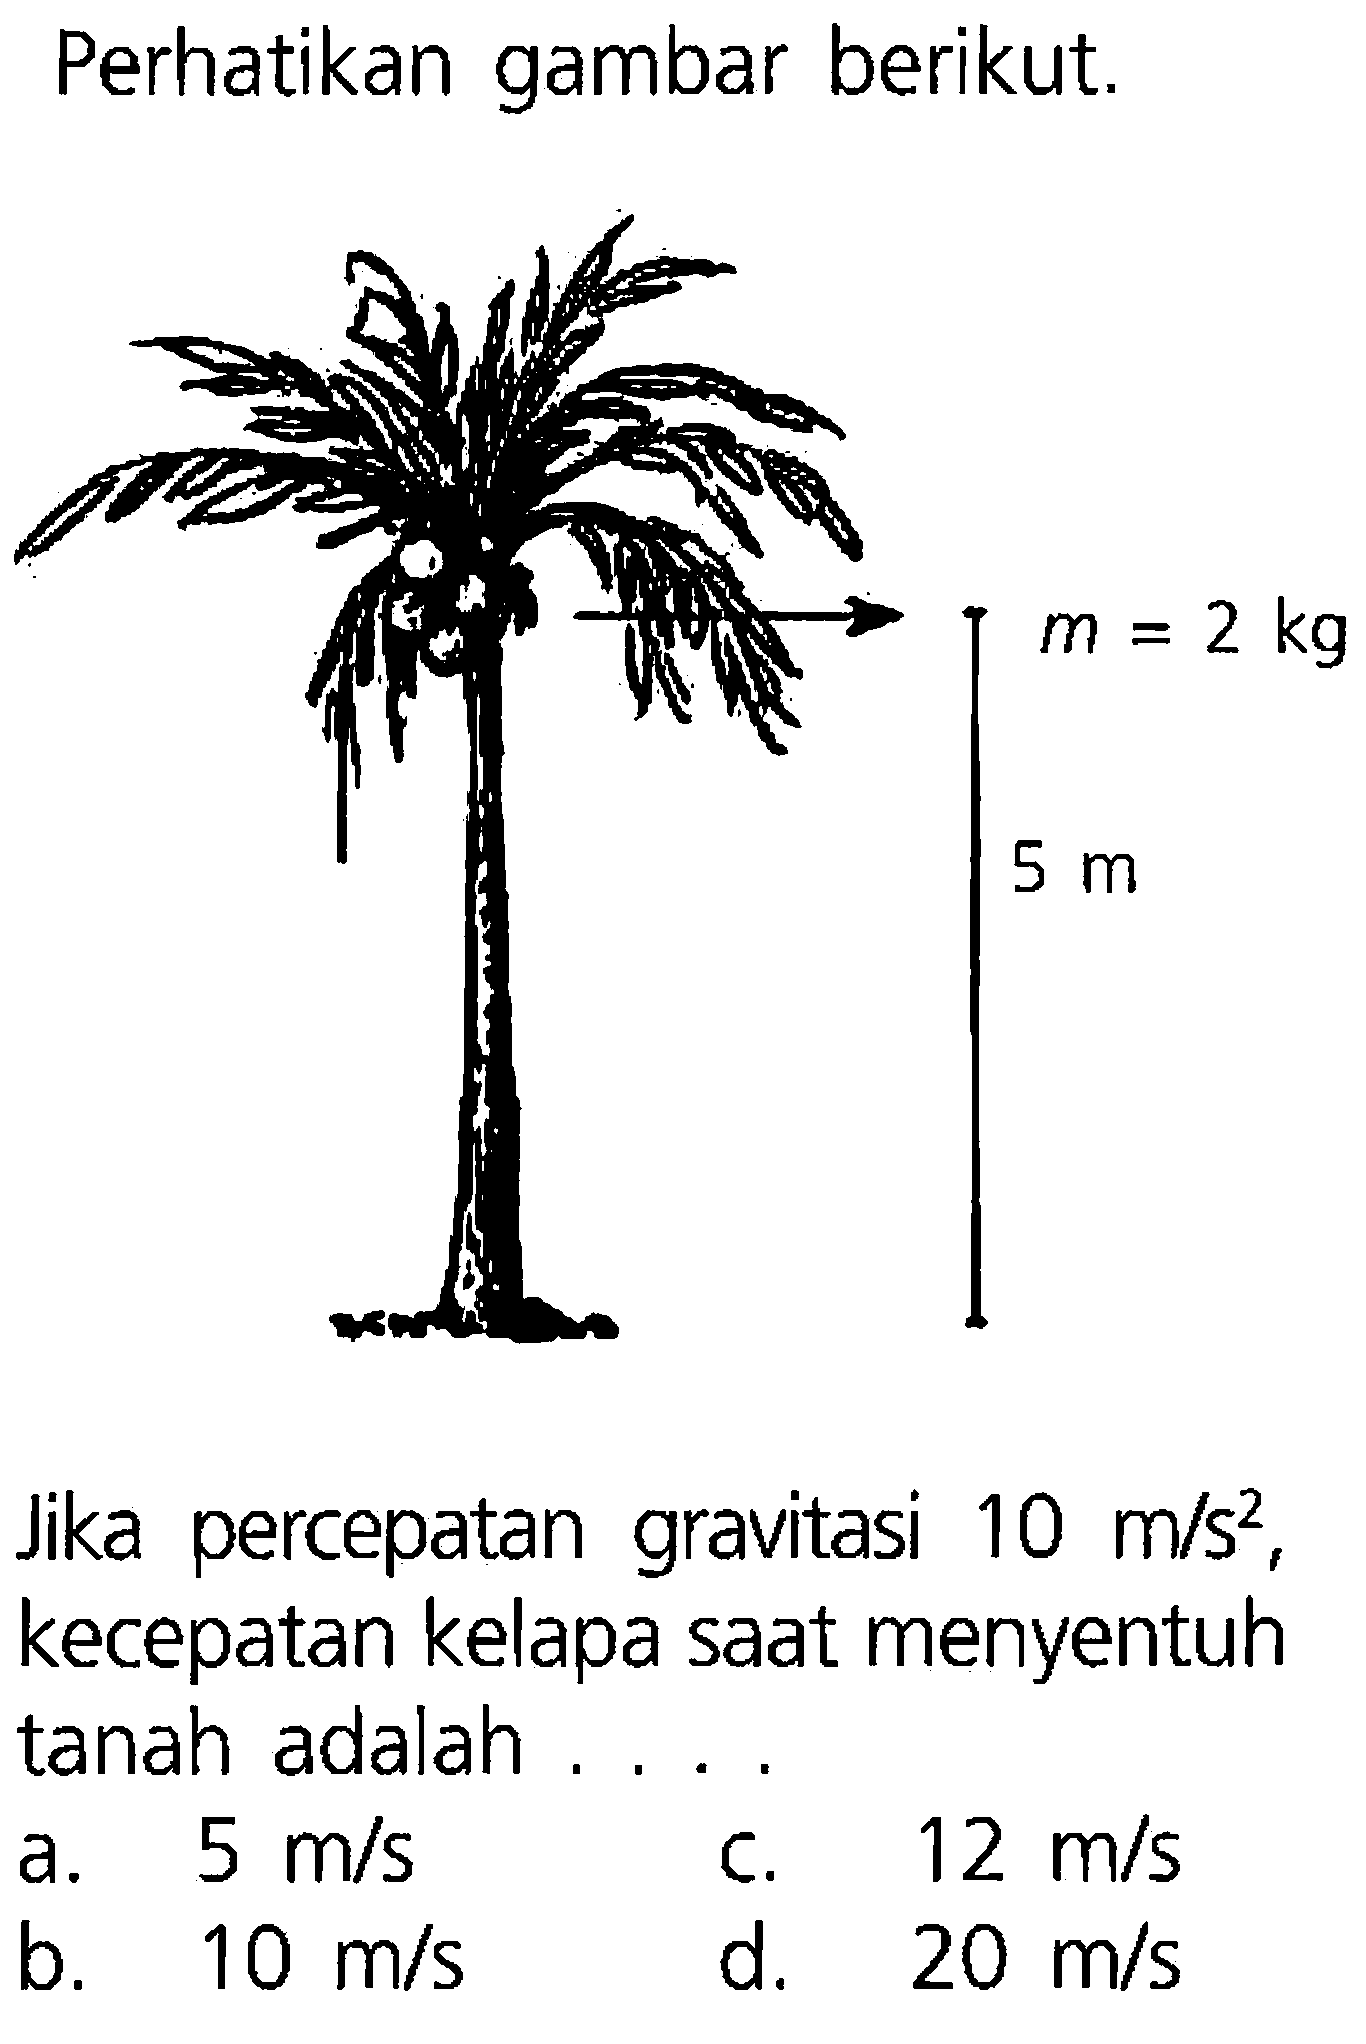 Perhatikan gambar berikut. m = 2 kg 5 m Jika percepatan gravitasi 10 m/s^2 , kecepatan kelapa saat menyentuh tanah adalah ....